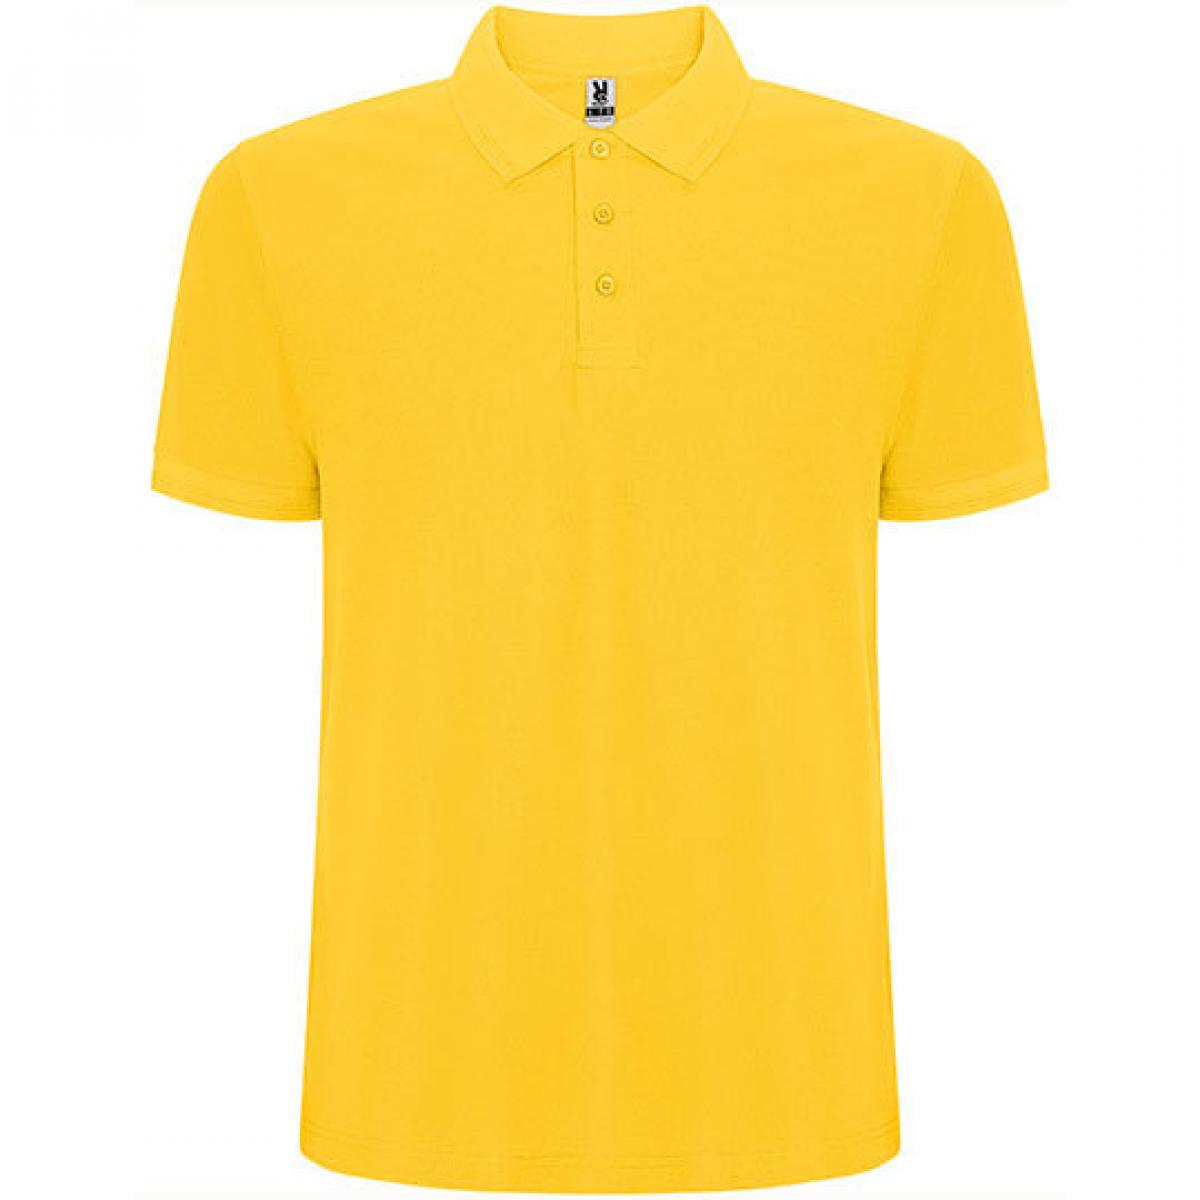 Hersteller: Roly Herstellernummer: PO6609 Artikelbezeichnung: Pegaso Premium Poloshirt - Piqué Farbe: Yellow 03